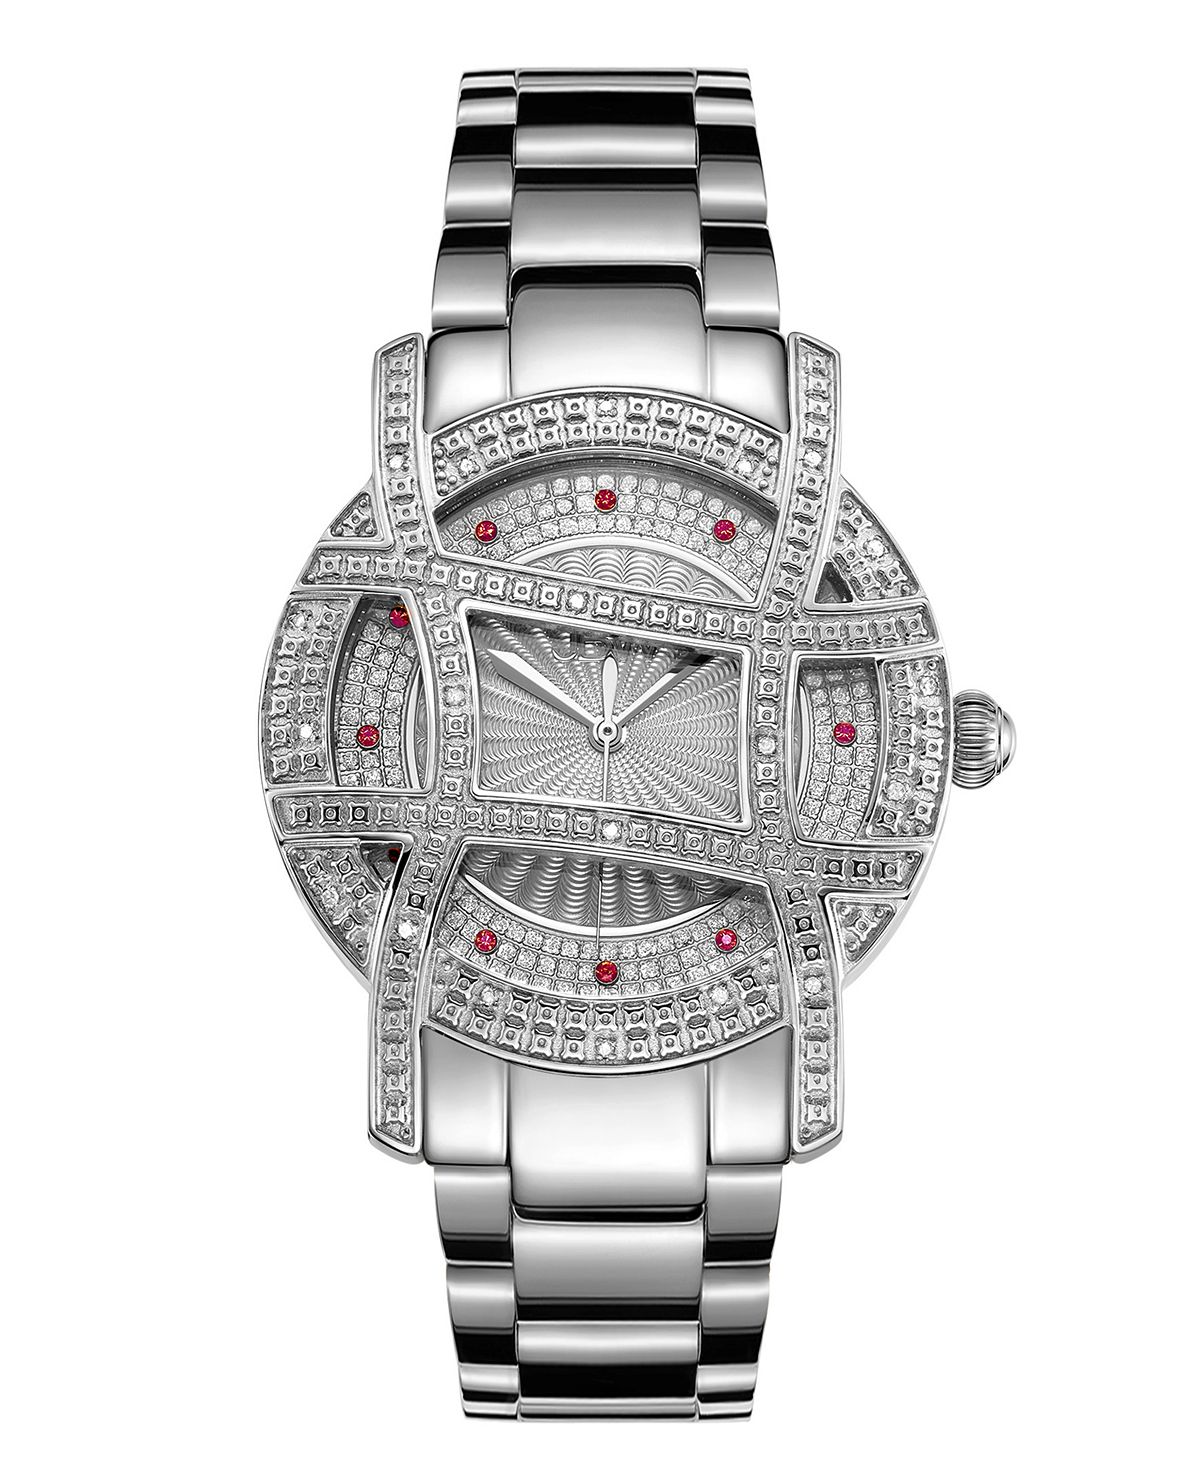 Женские часы Olympia серебристого цвета из нержавеющей стали, 38 мм Jbw женские часы cristal из нержавеющей стали серебристого цвета 28 мм jbw